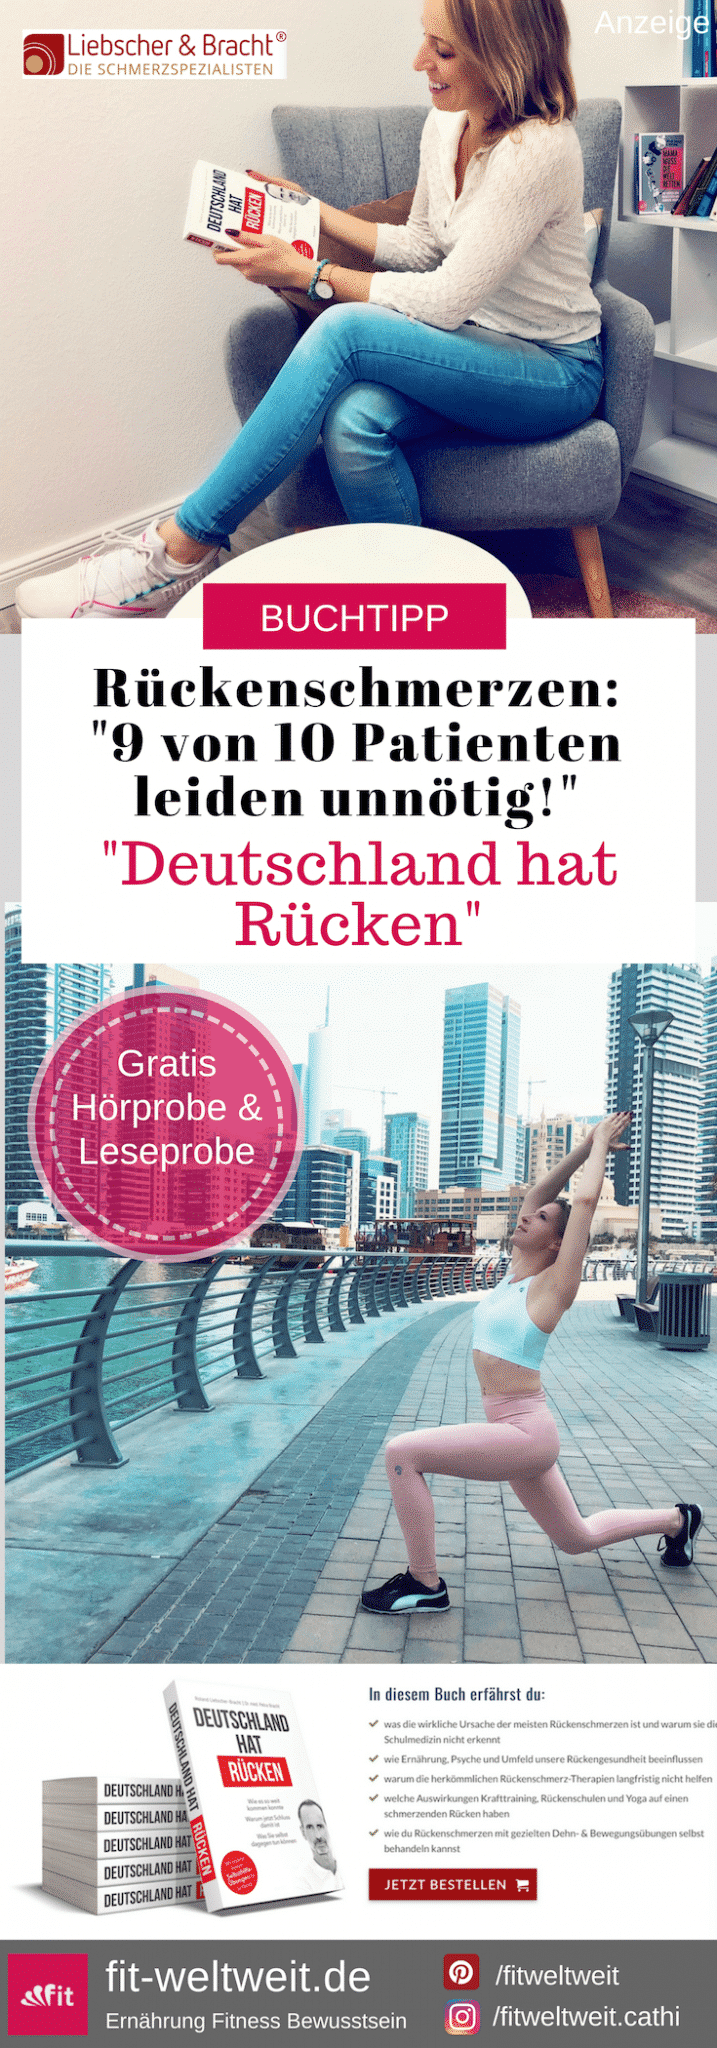 #RÜCKEN #LIEBSCHERBRACHT "Deutschland hat Rücken". Rückenschmerzen abschaffen. Das neue Buch von Liebscher & Bracht. Jetzt auf Amazon vorbestellen und sichern! #liebscherbracht #rückenschmerzen #rückenübungen